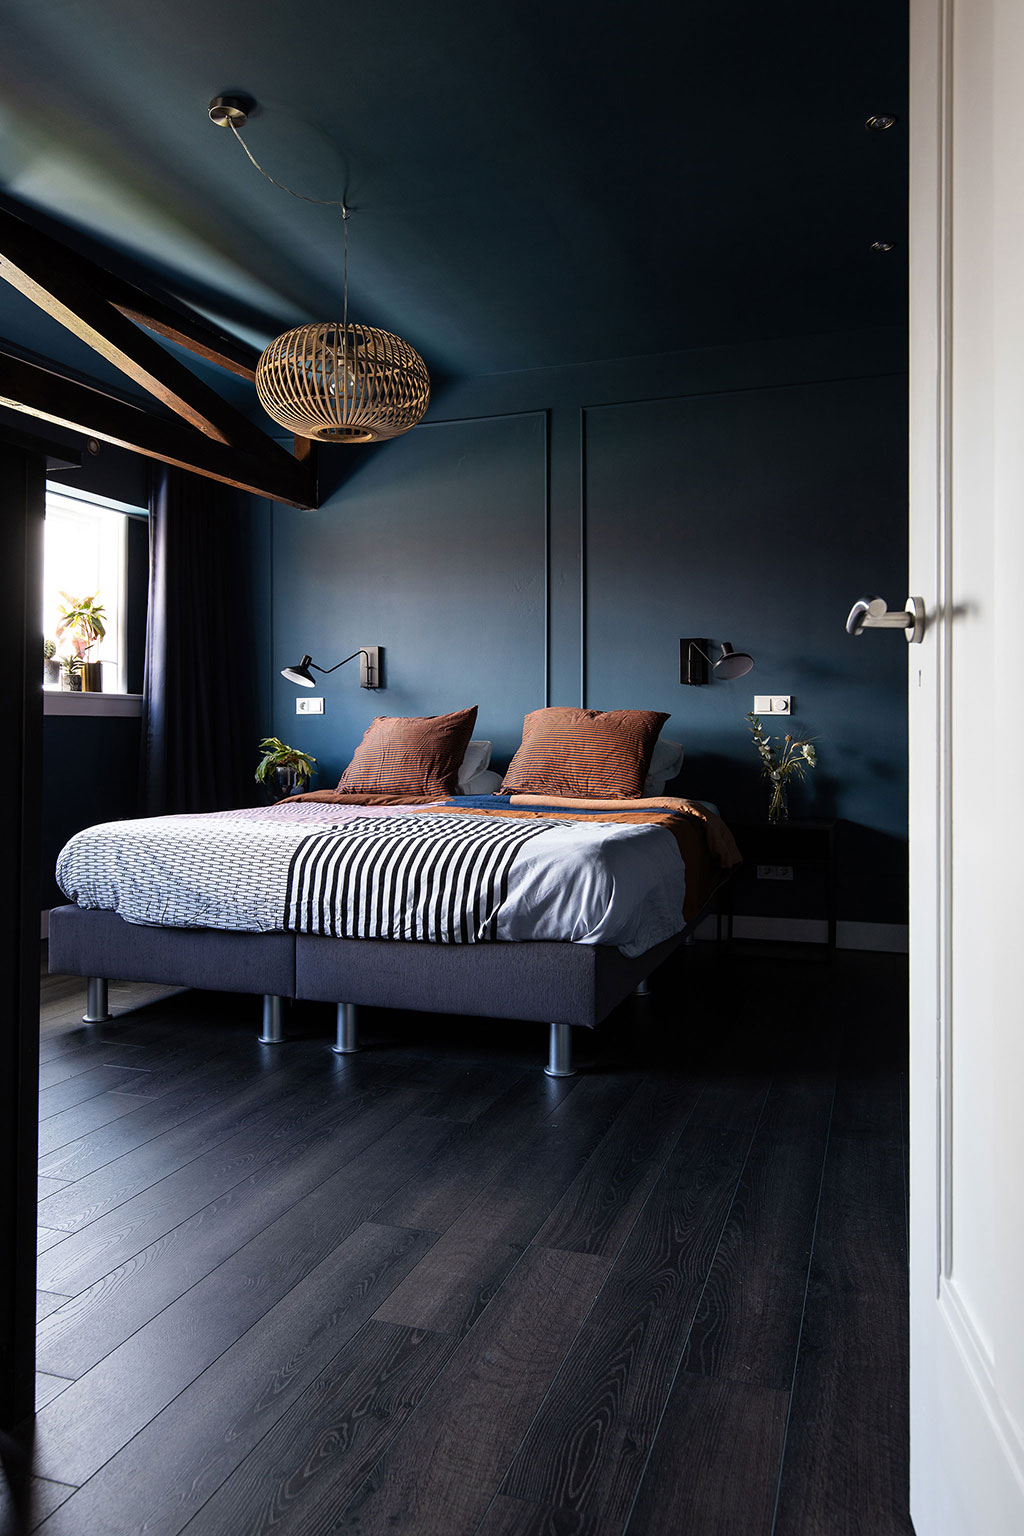 Donkere vloer en muren slaapkamer | Laura Hindriks | Stek Magazine